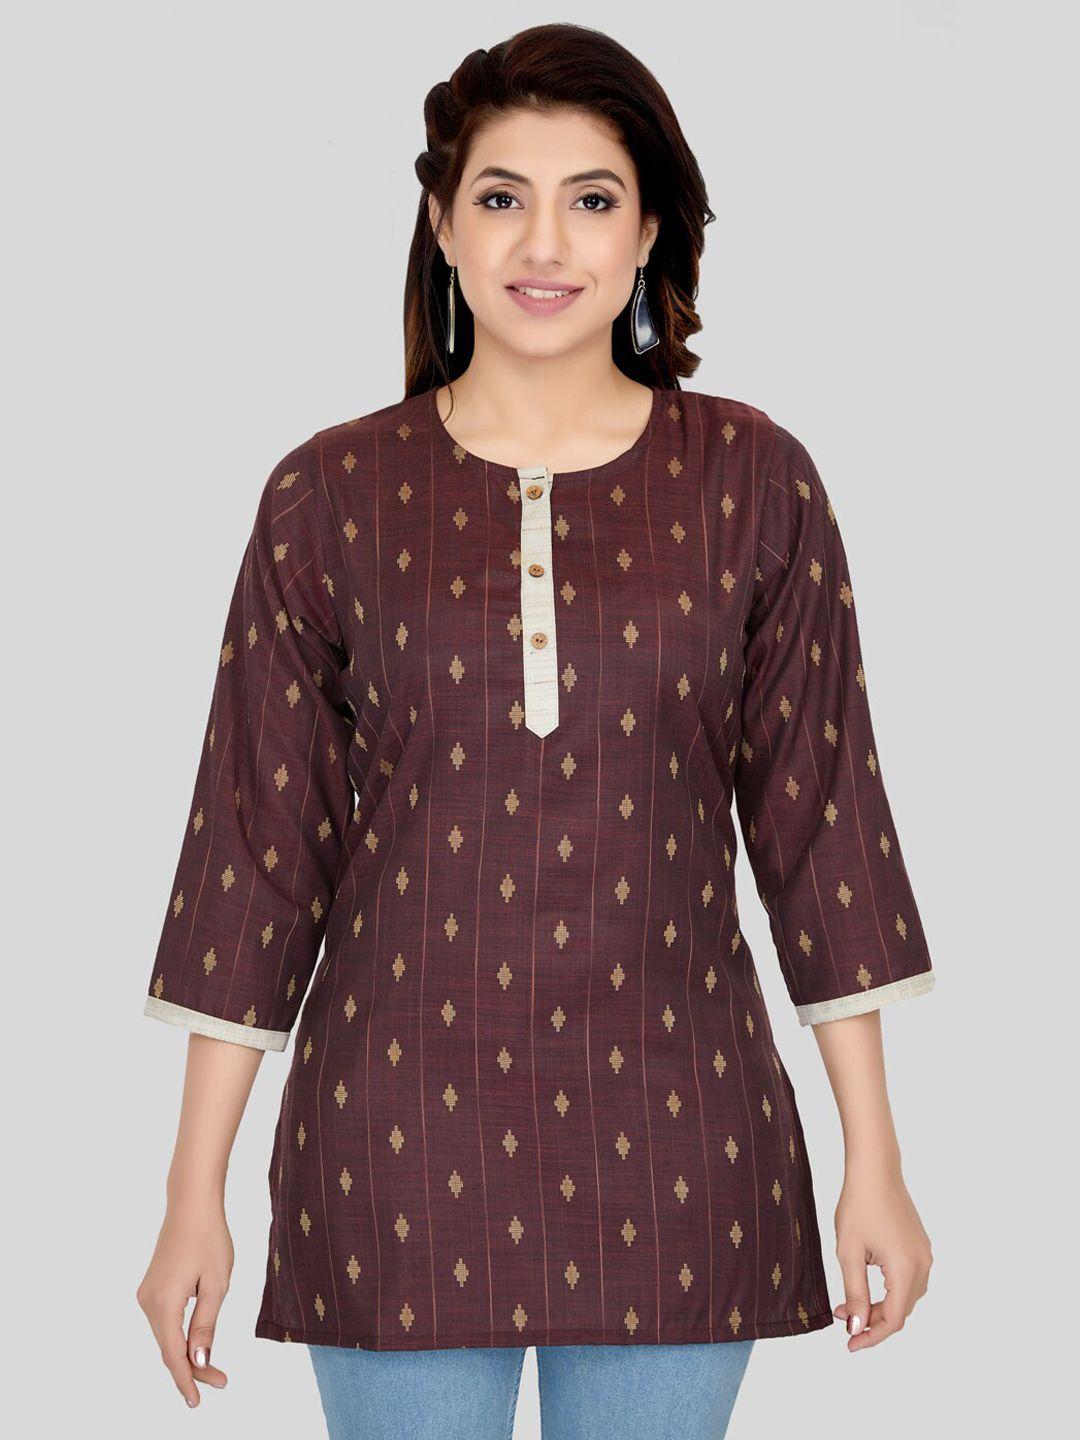 saree swarg coffee brown woven design kurti